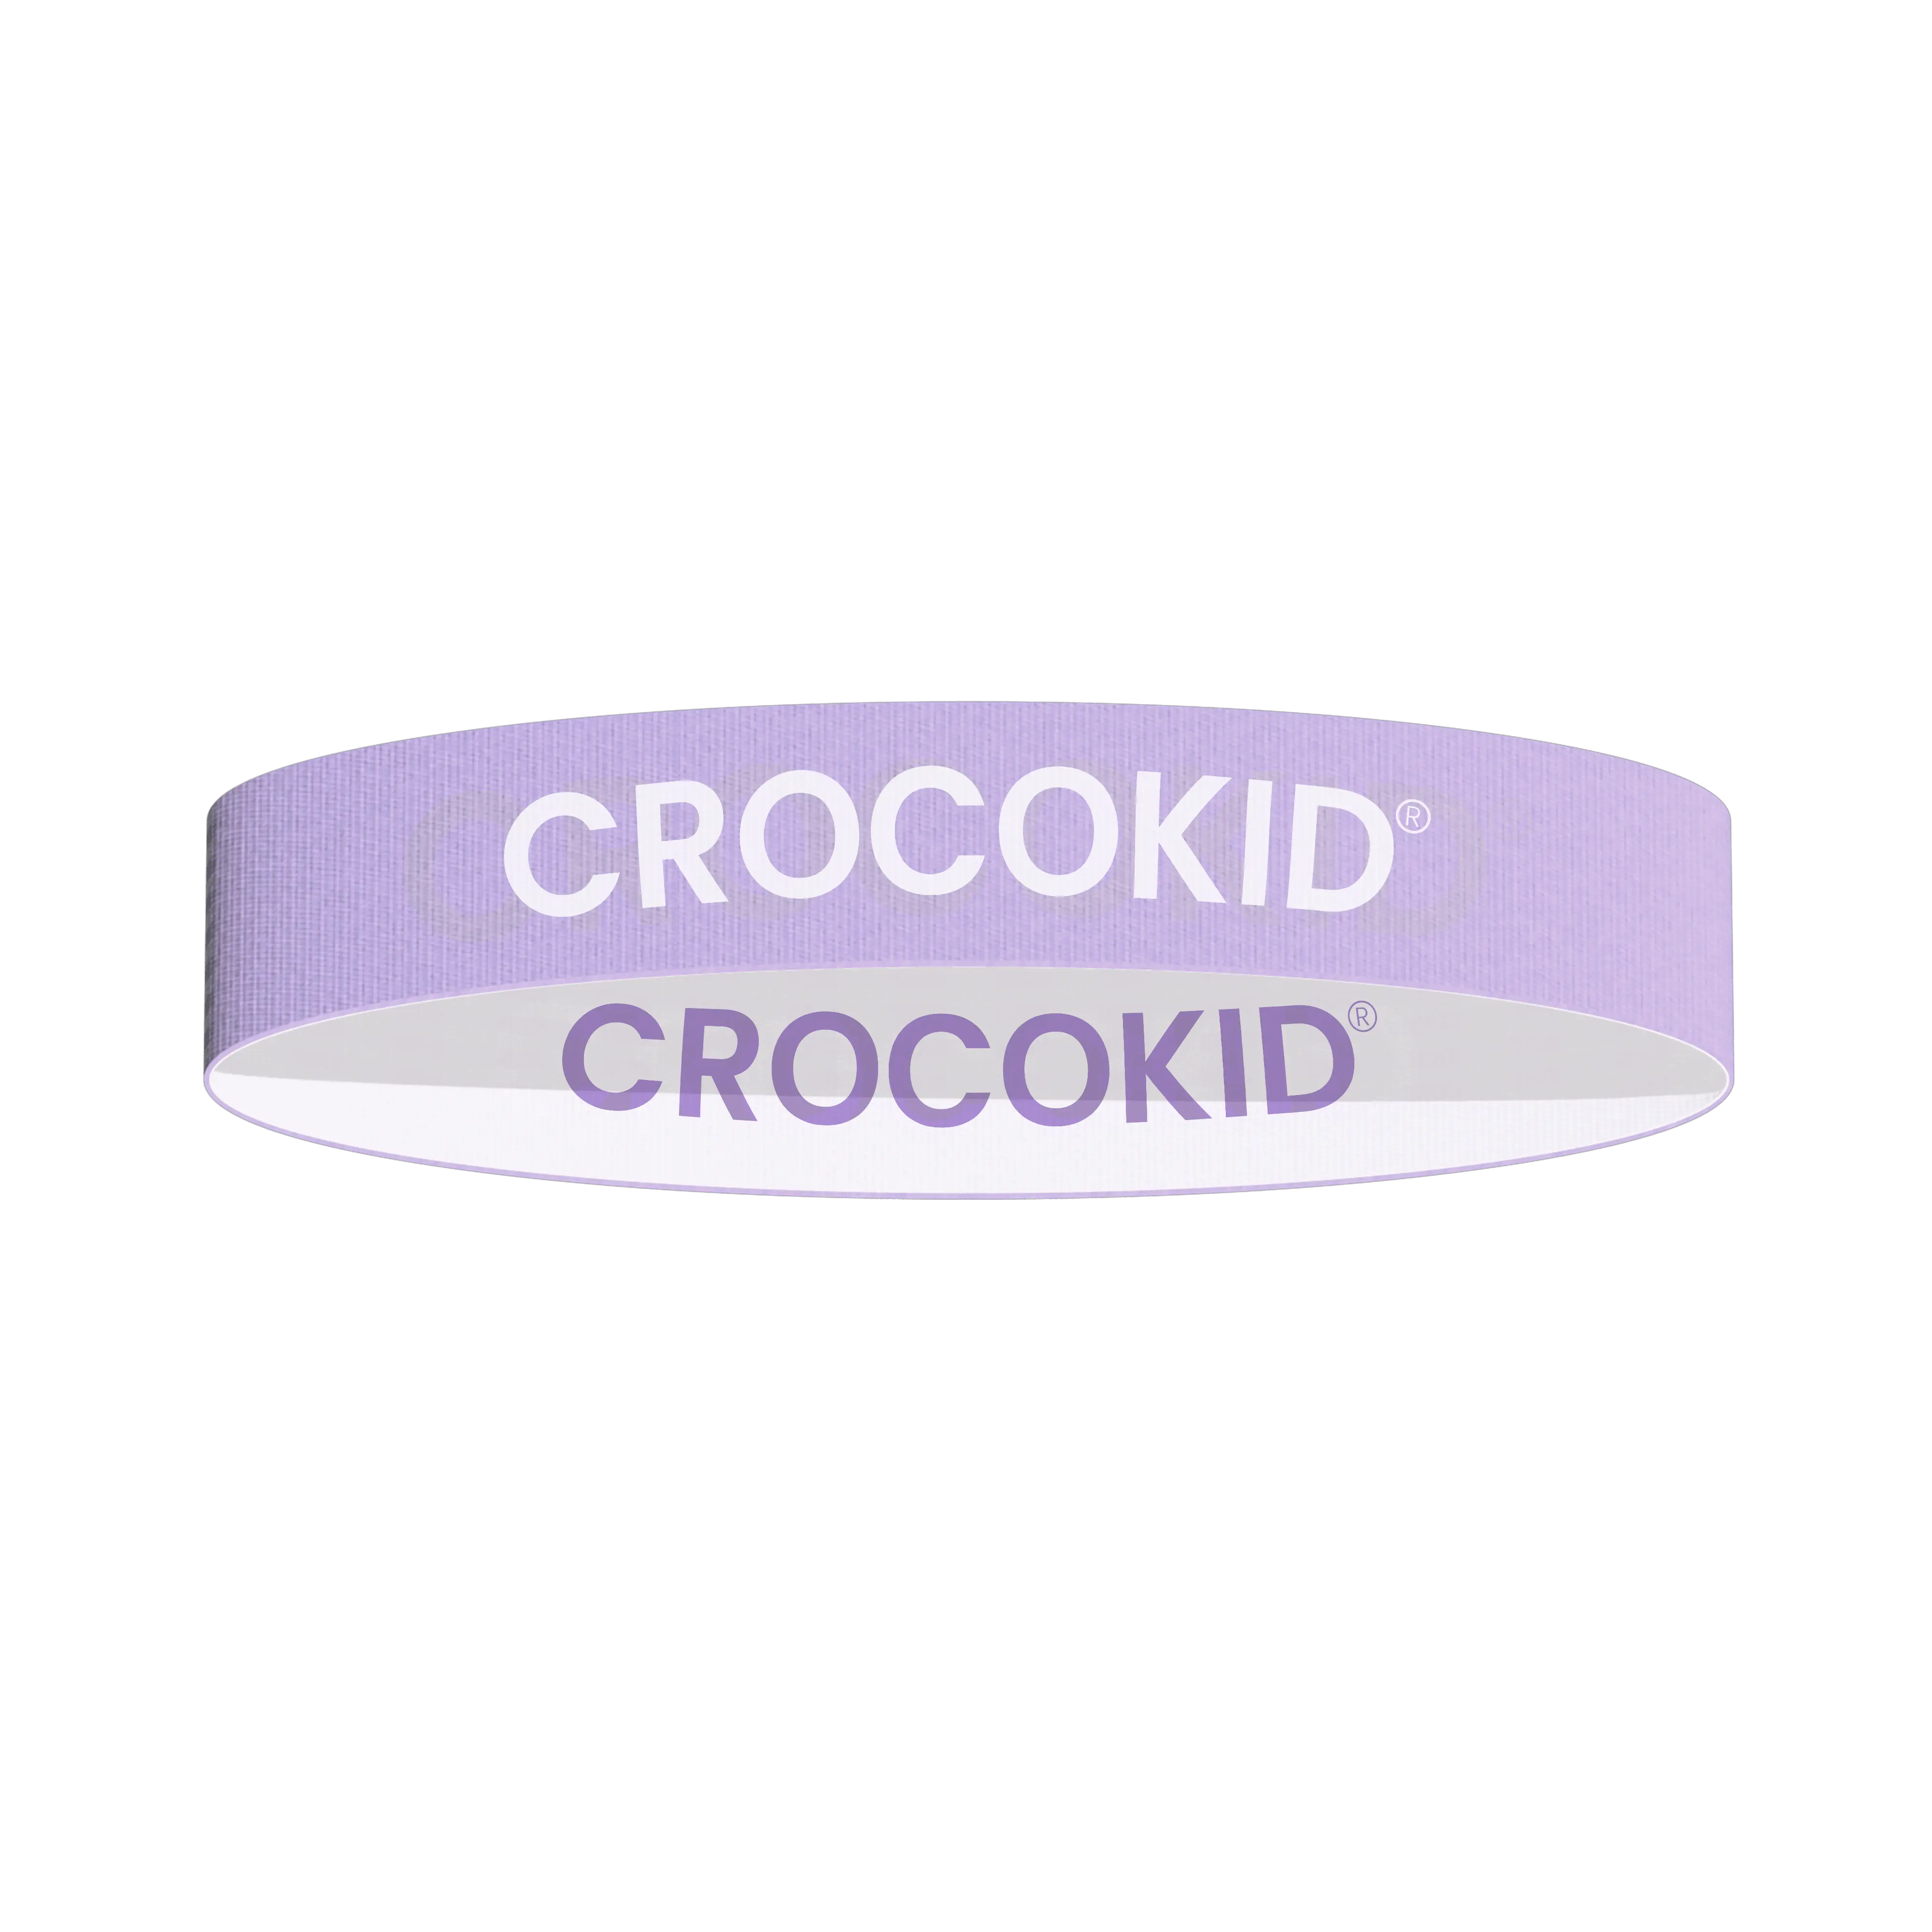 CROCOKID® - Elastique de Transport pour Kit Bain Bébé - Crocokid